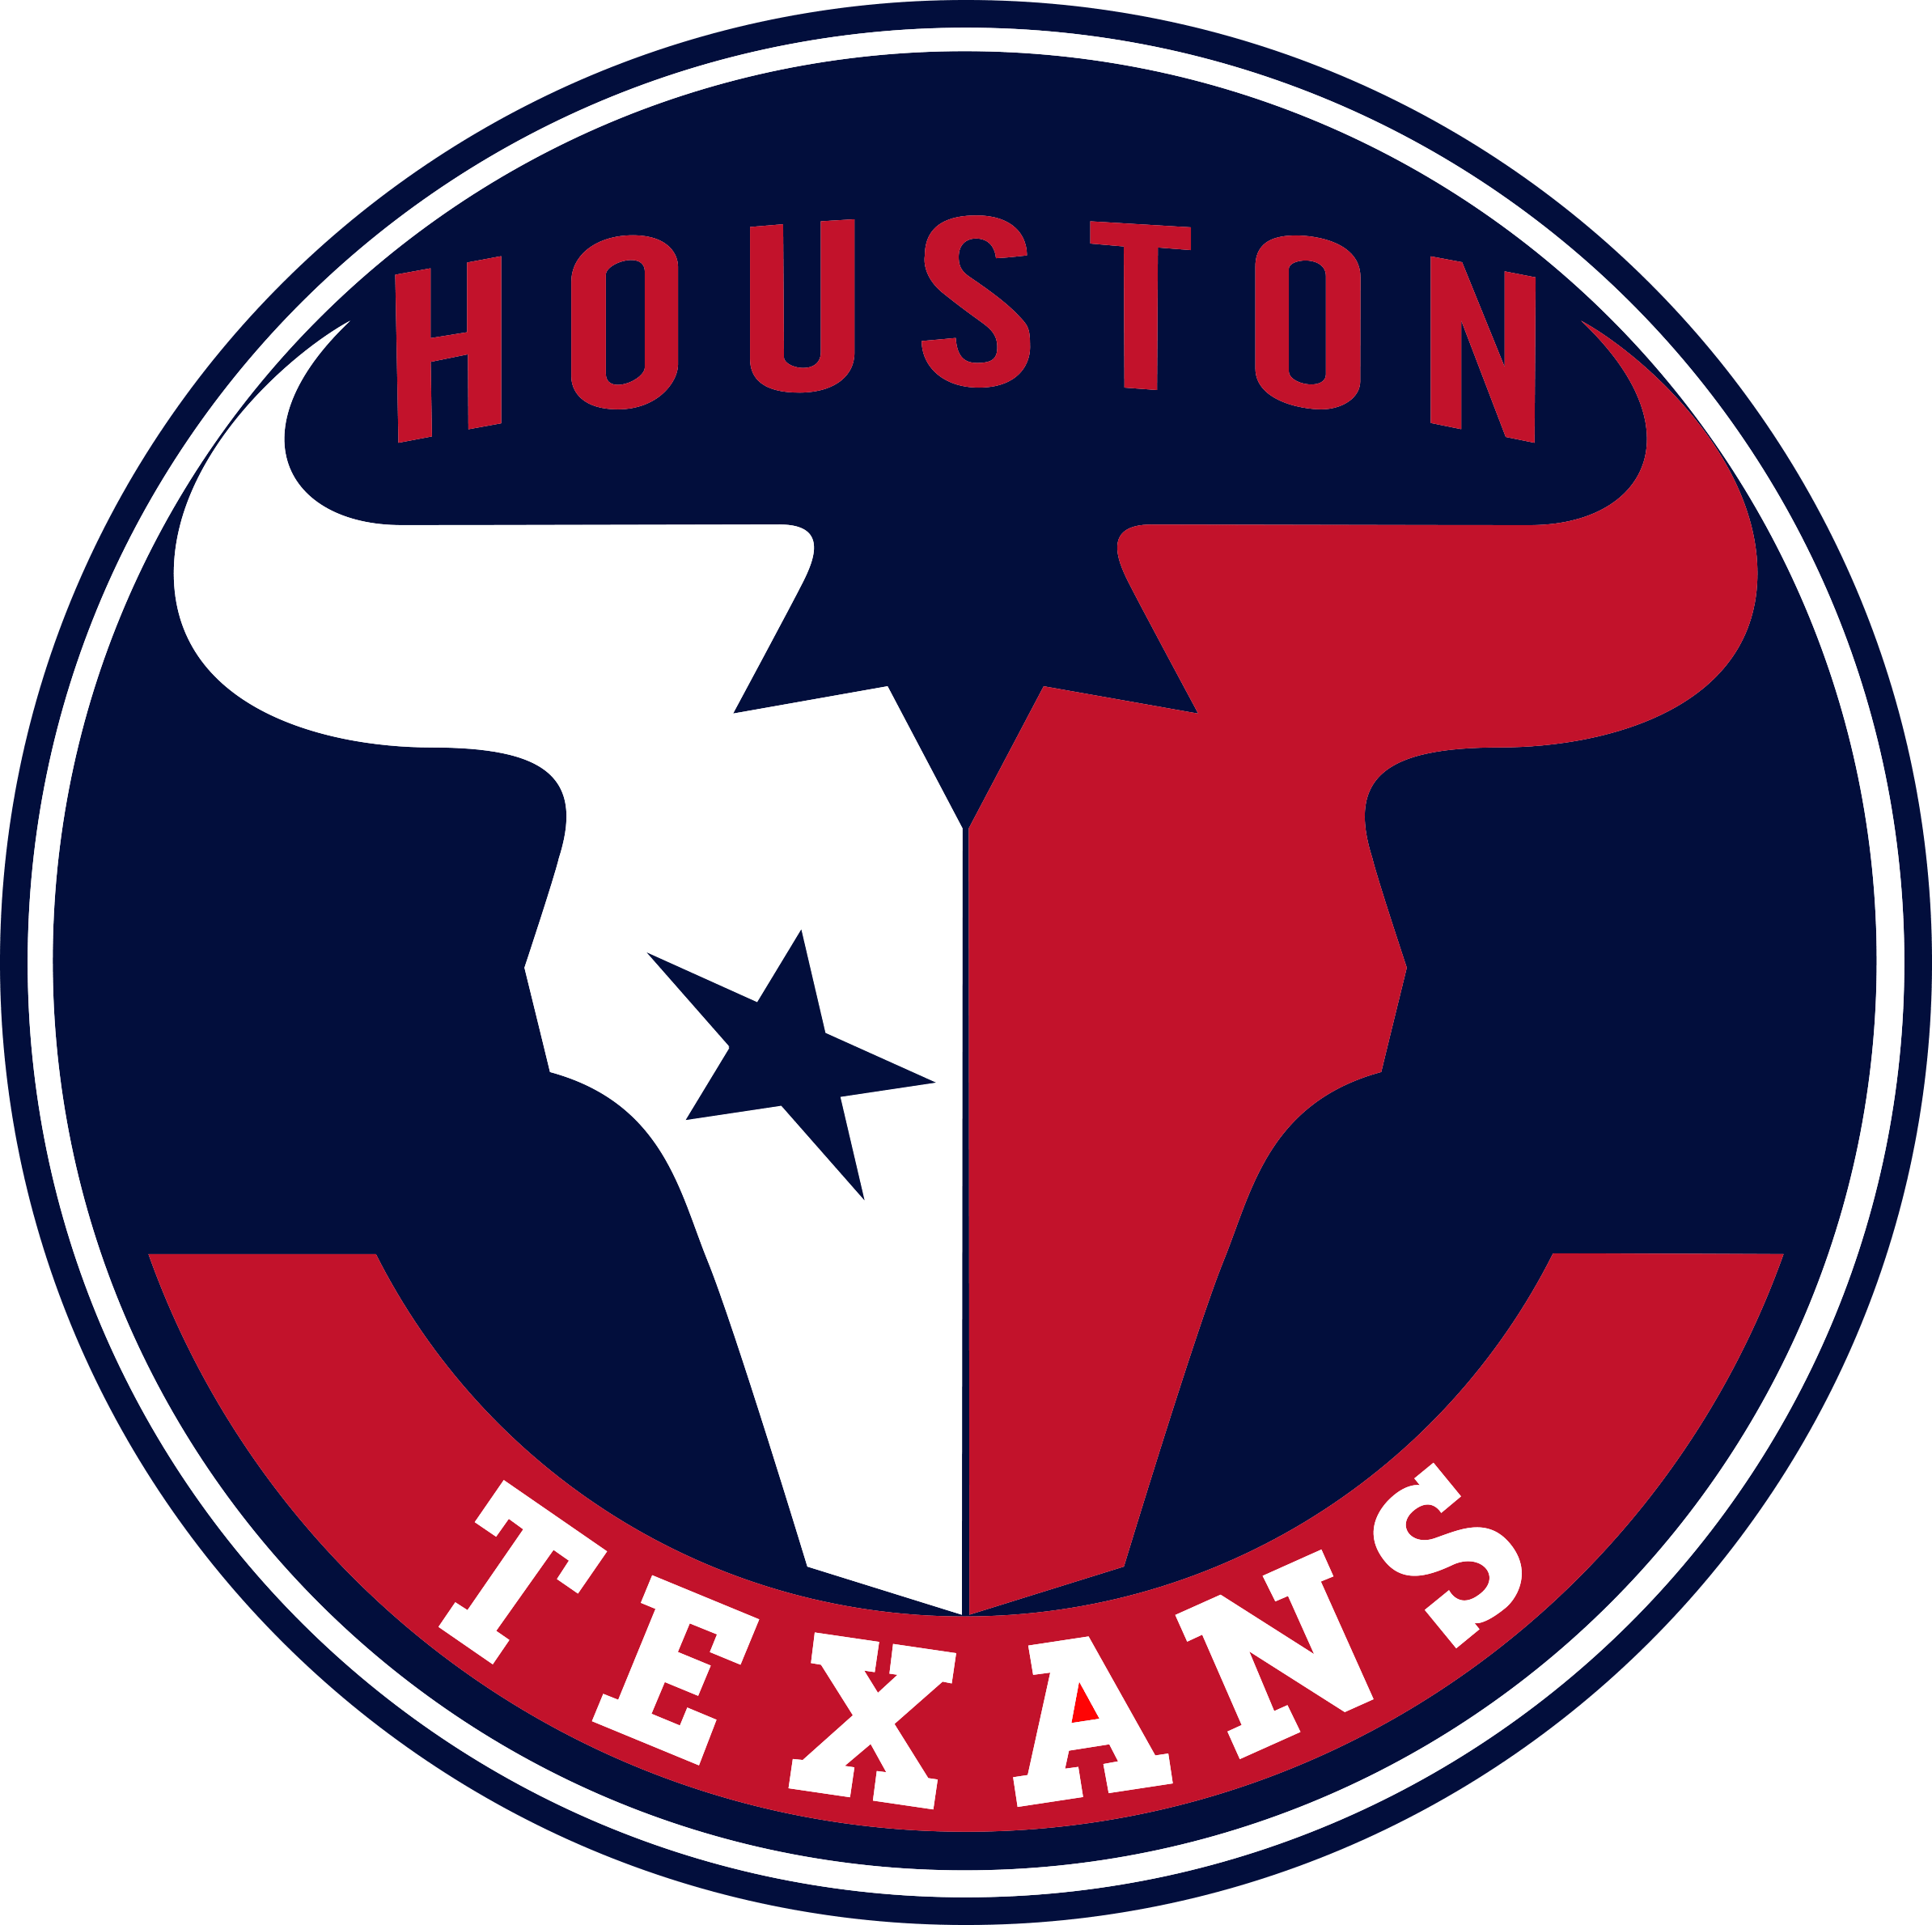 Houston Texans Transparent Images